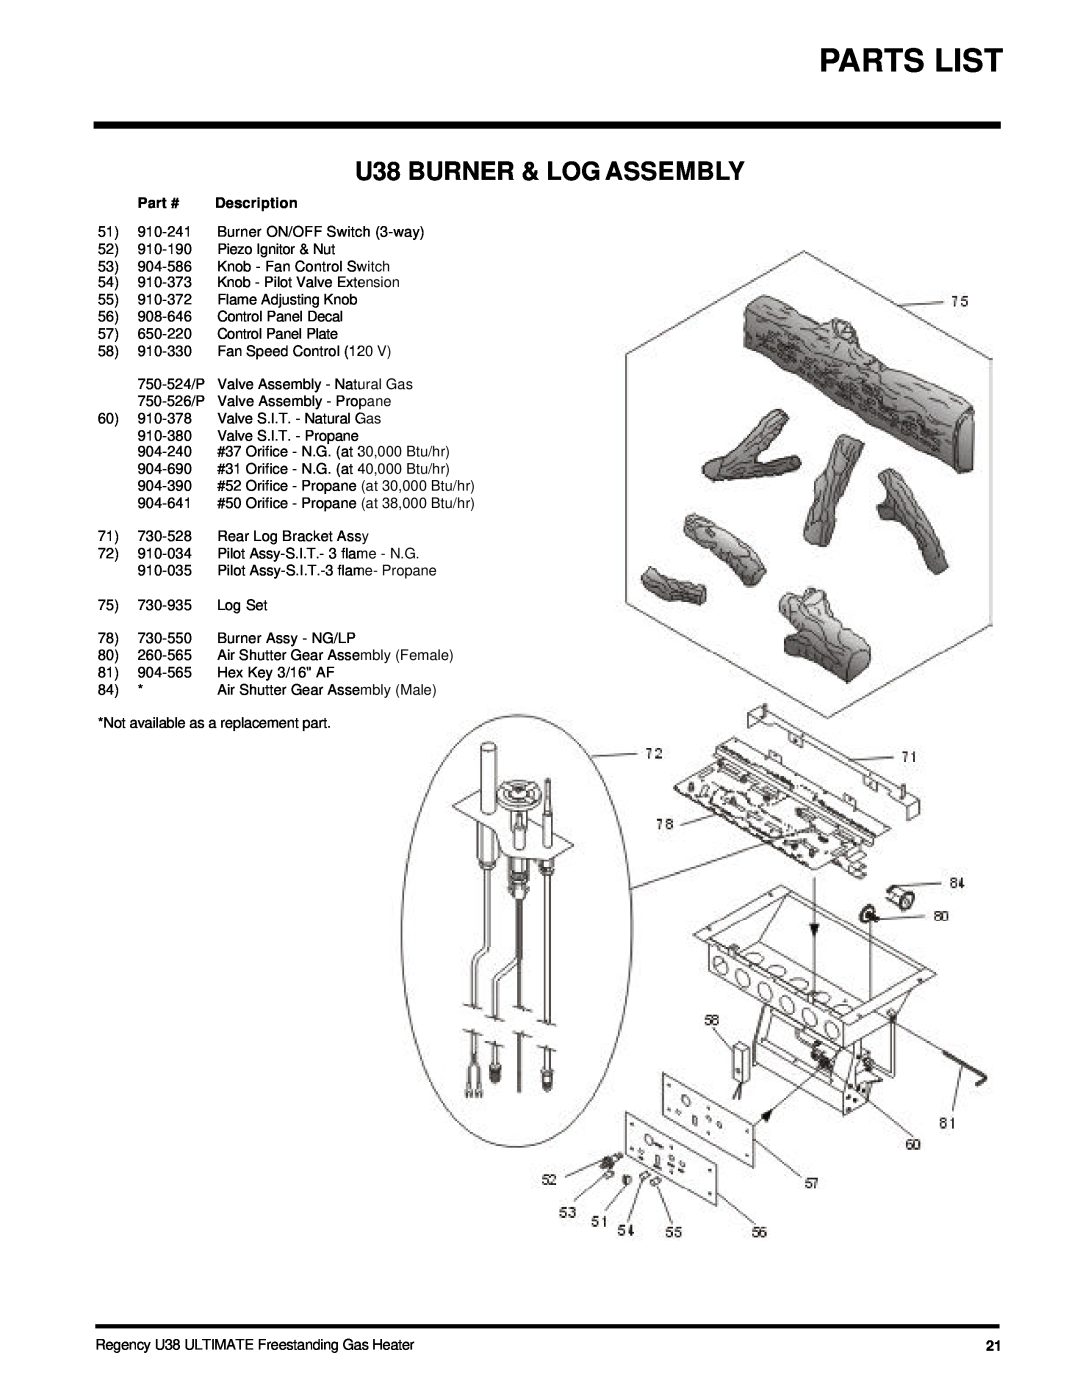 Regency U38-NG, U38-LP installation manual Parts List, U38 BURNER & LOG ASSEMBLY, Description 